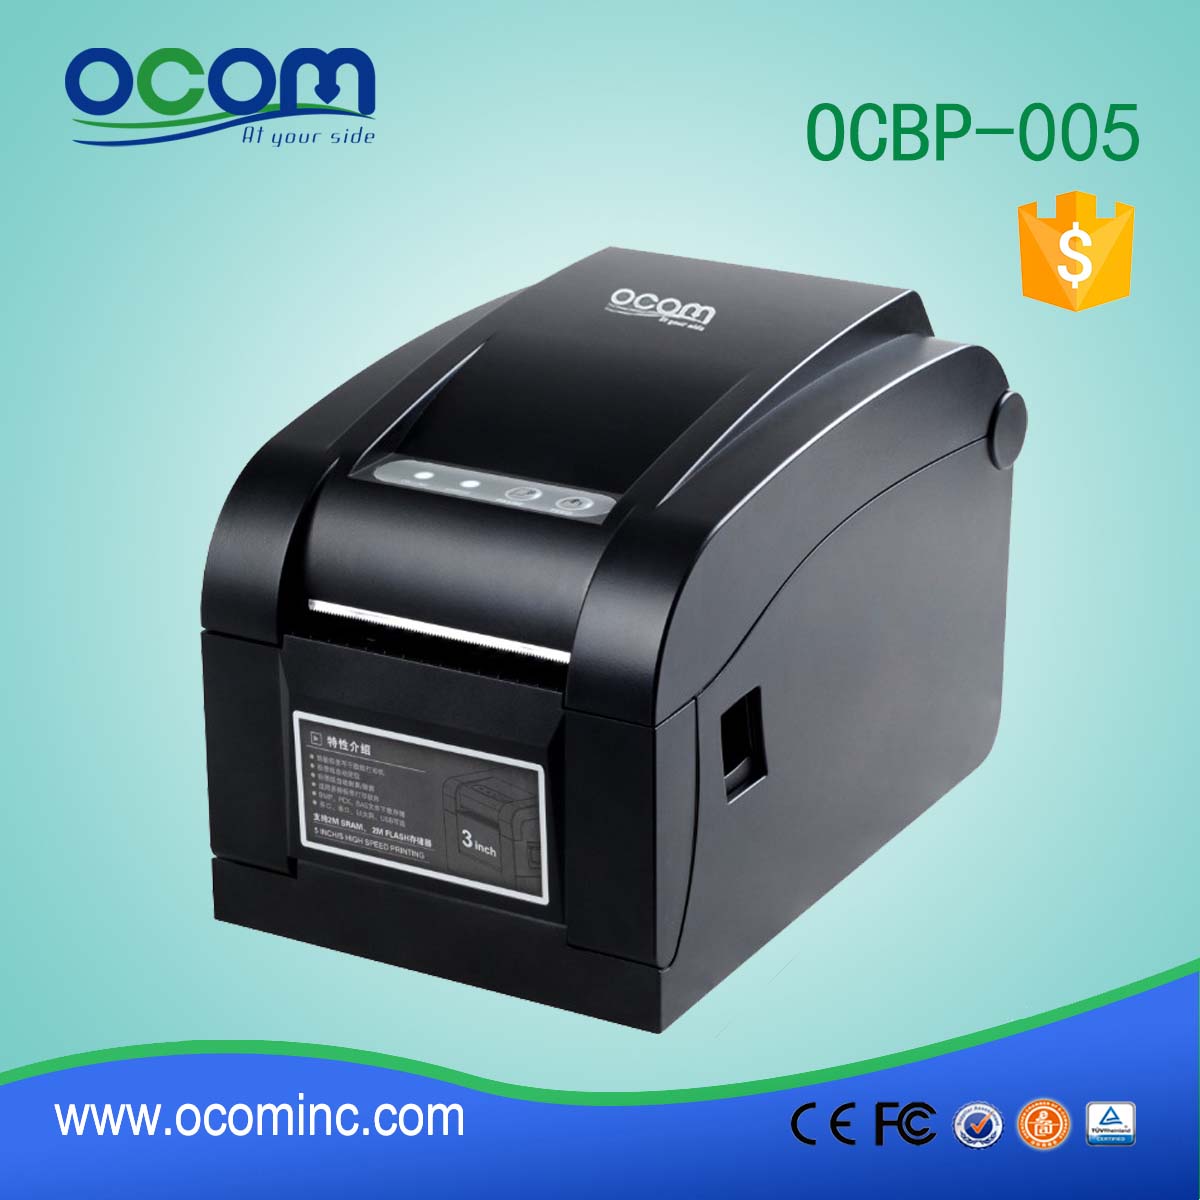 OCBP-005-U Interfaz USB de impresora térmica de etiquetas de códigos de barras de 3 "